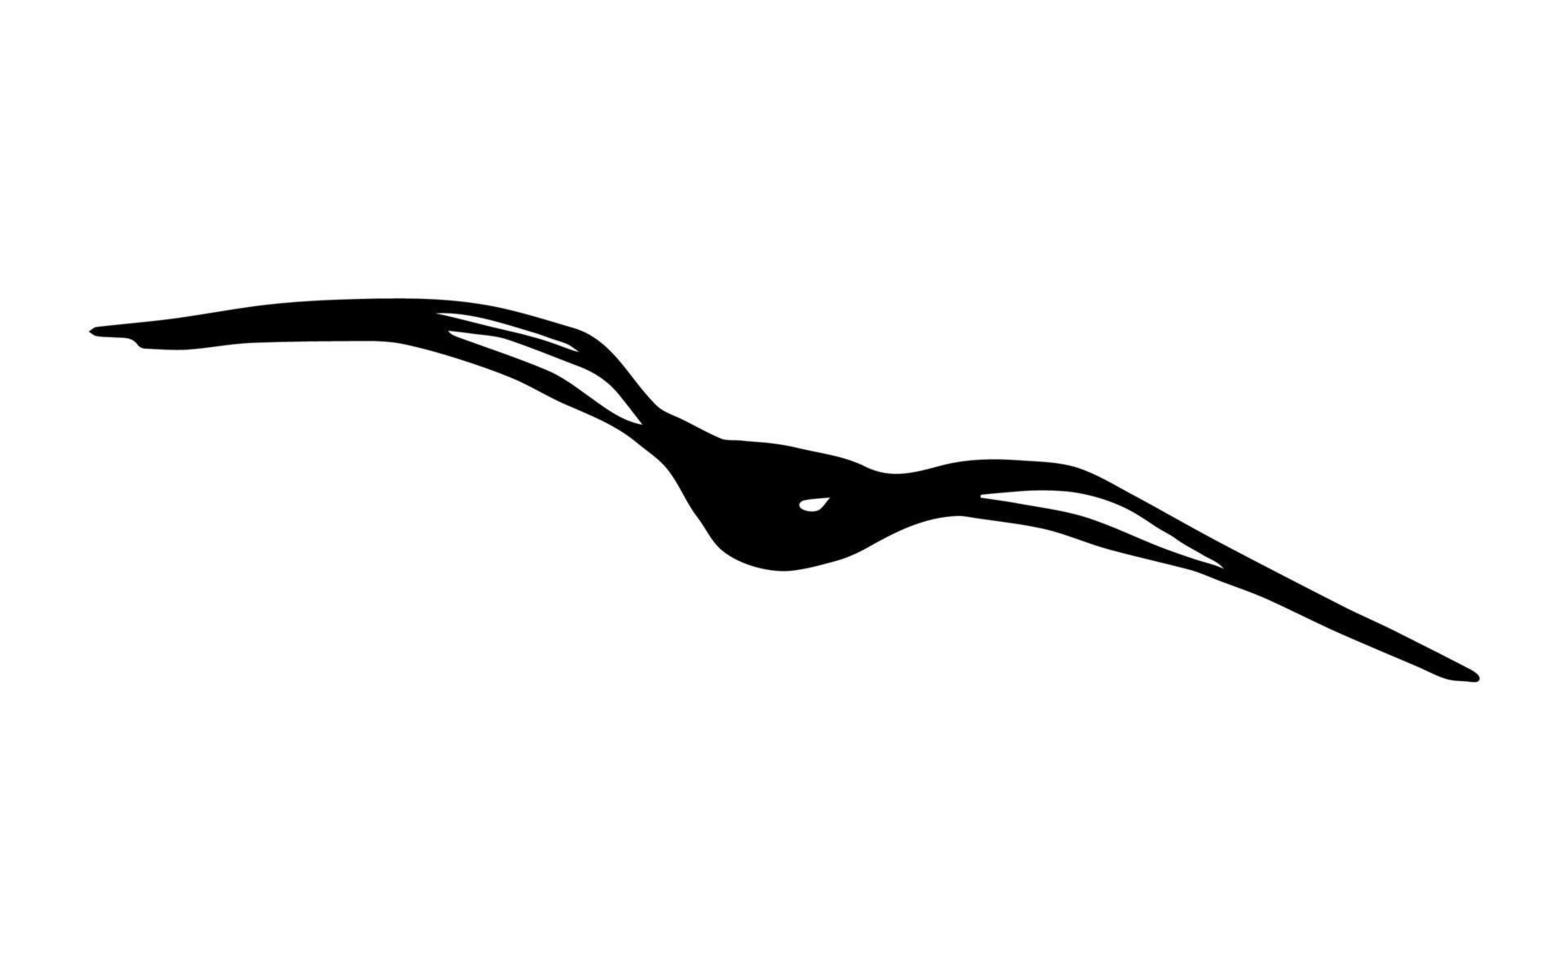 handgetekende eenvoudige vectorillustratie in zwarte omtrek. silhouet van een meeuw stijgende in de lucht geïsoleerd op een witte achtergrond. vliegende vogel. natuur, kust, ornithologie. vector